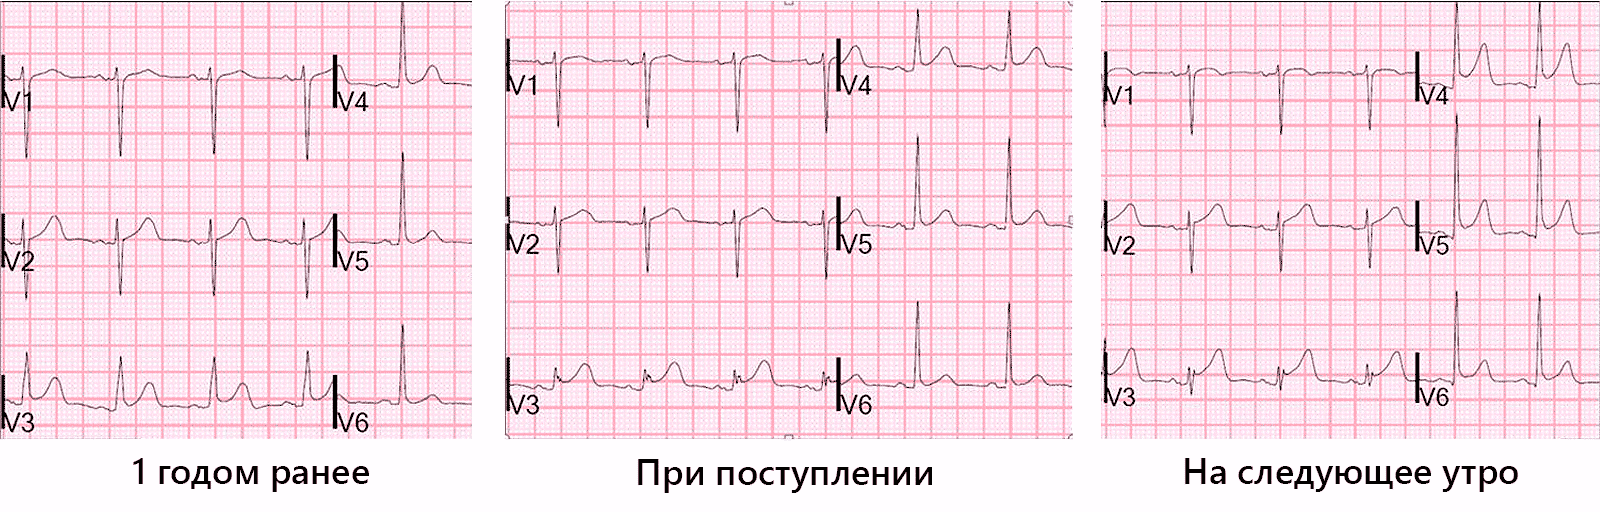 Диффузное нарушение процесса реполяризации сердца. СРРЖ на ЭКГ. ЭКГ при синдроме ранней реполяризации. Синдром ранней реполяризации на ЭКГ. Ранняя реполяризация желудочков на ЭКГ.